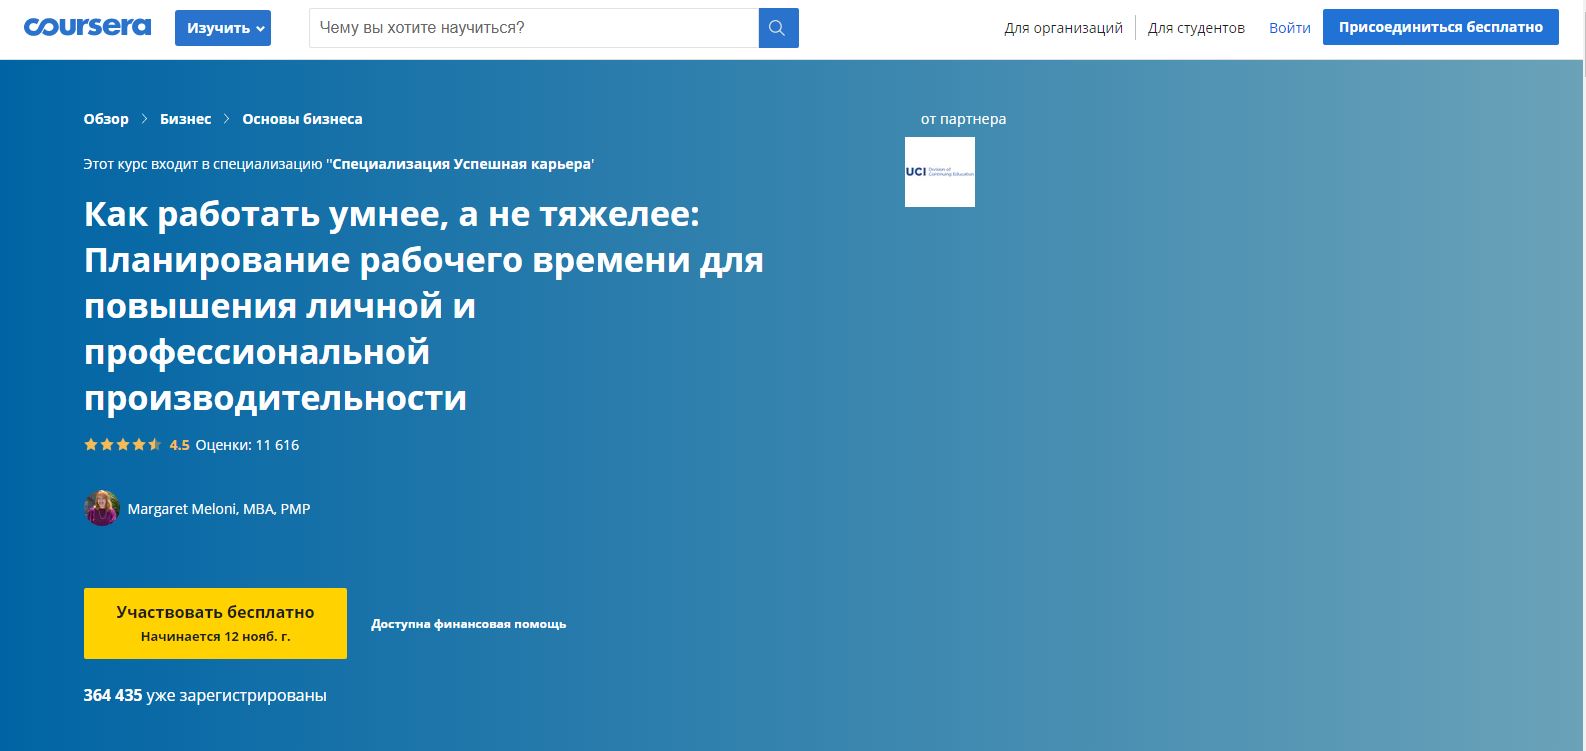 Обзор бесплатных онлайн-курсов Coursera полностью на русском языке или с русскими субтитрами